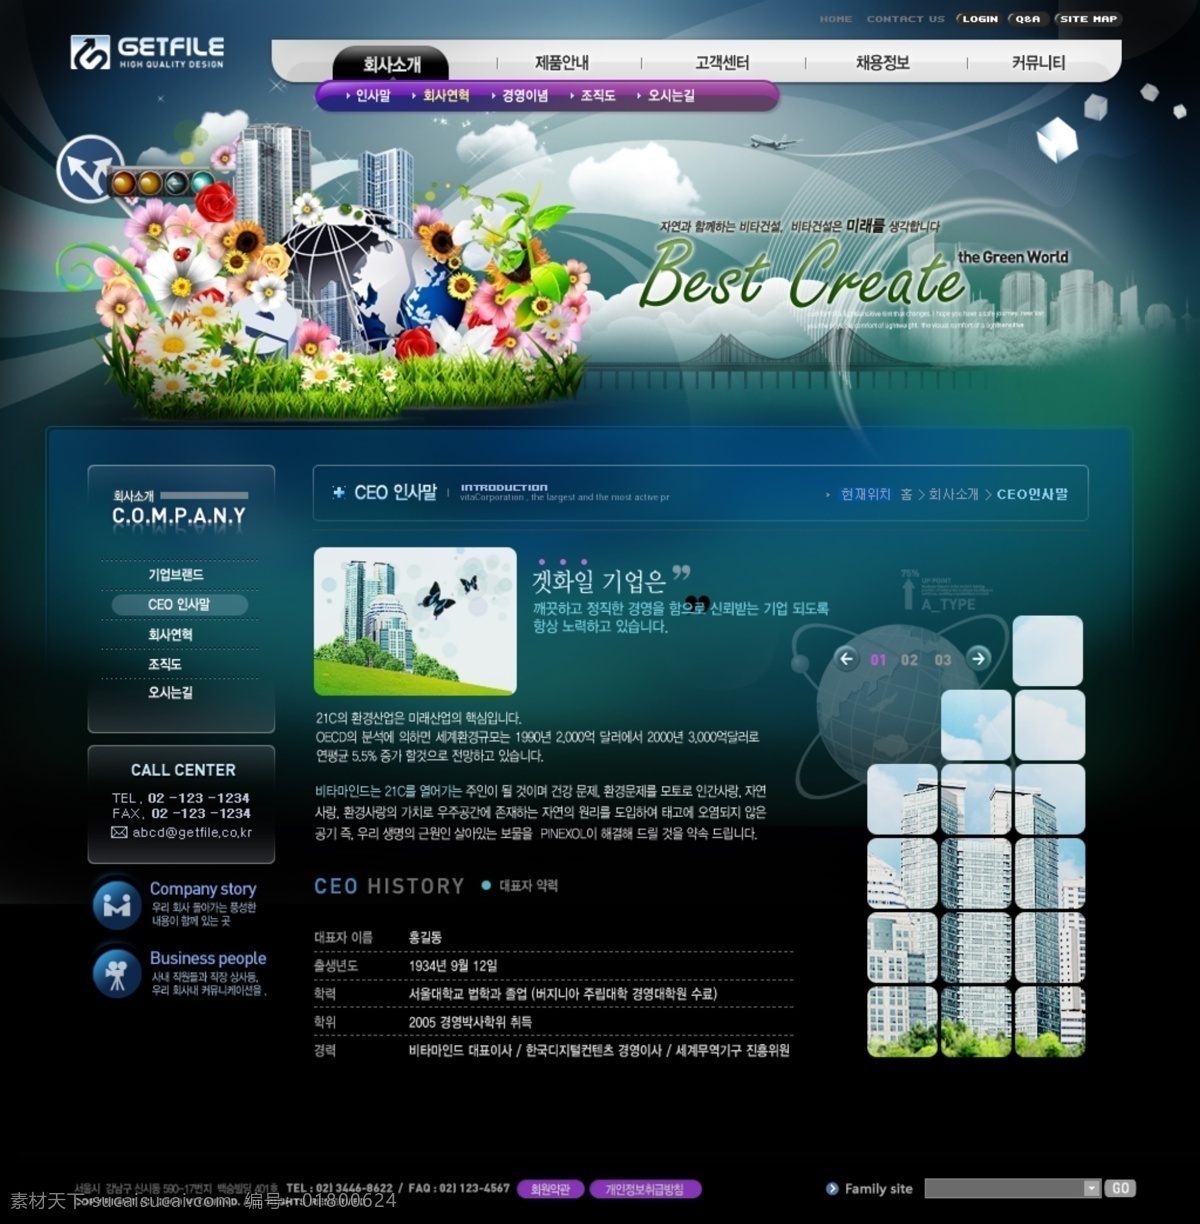 韩国公司 企业 模板 按钮 韩国模板 界面设计 商务模板 图标 网页设计元素 建站模板 网页素材 网页模板